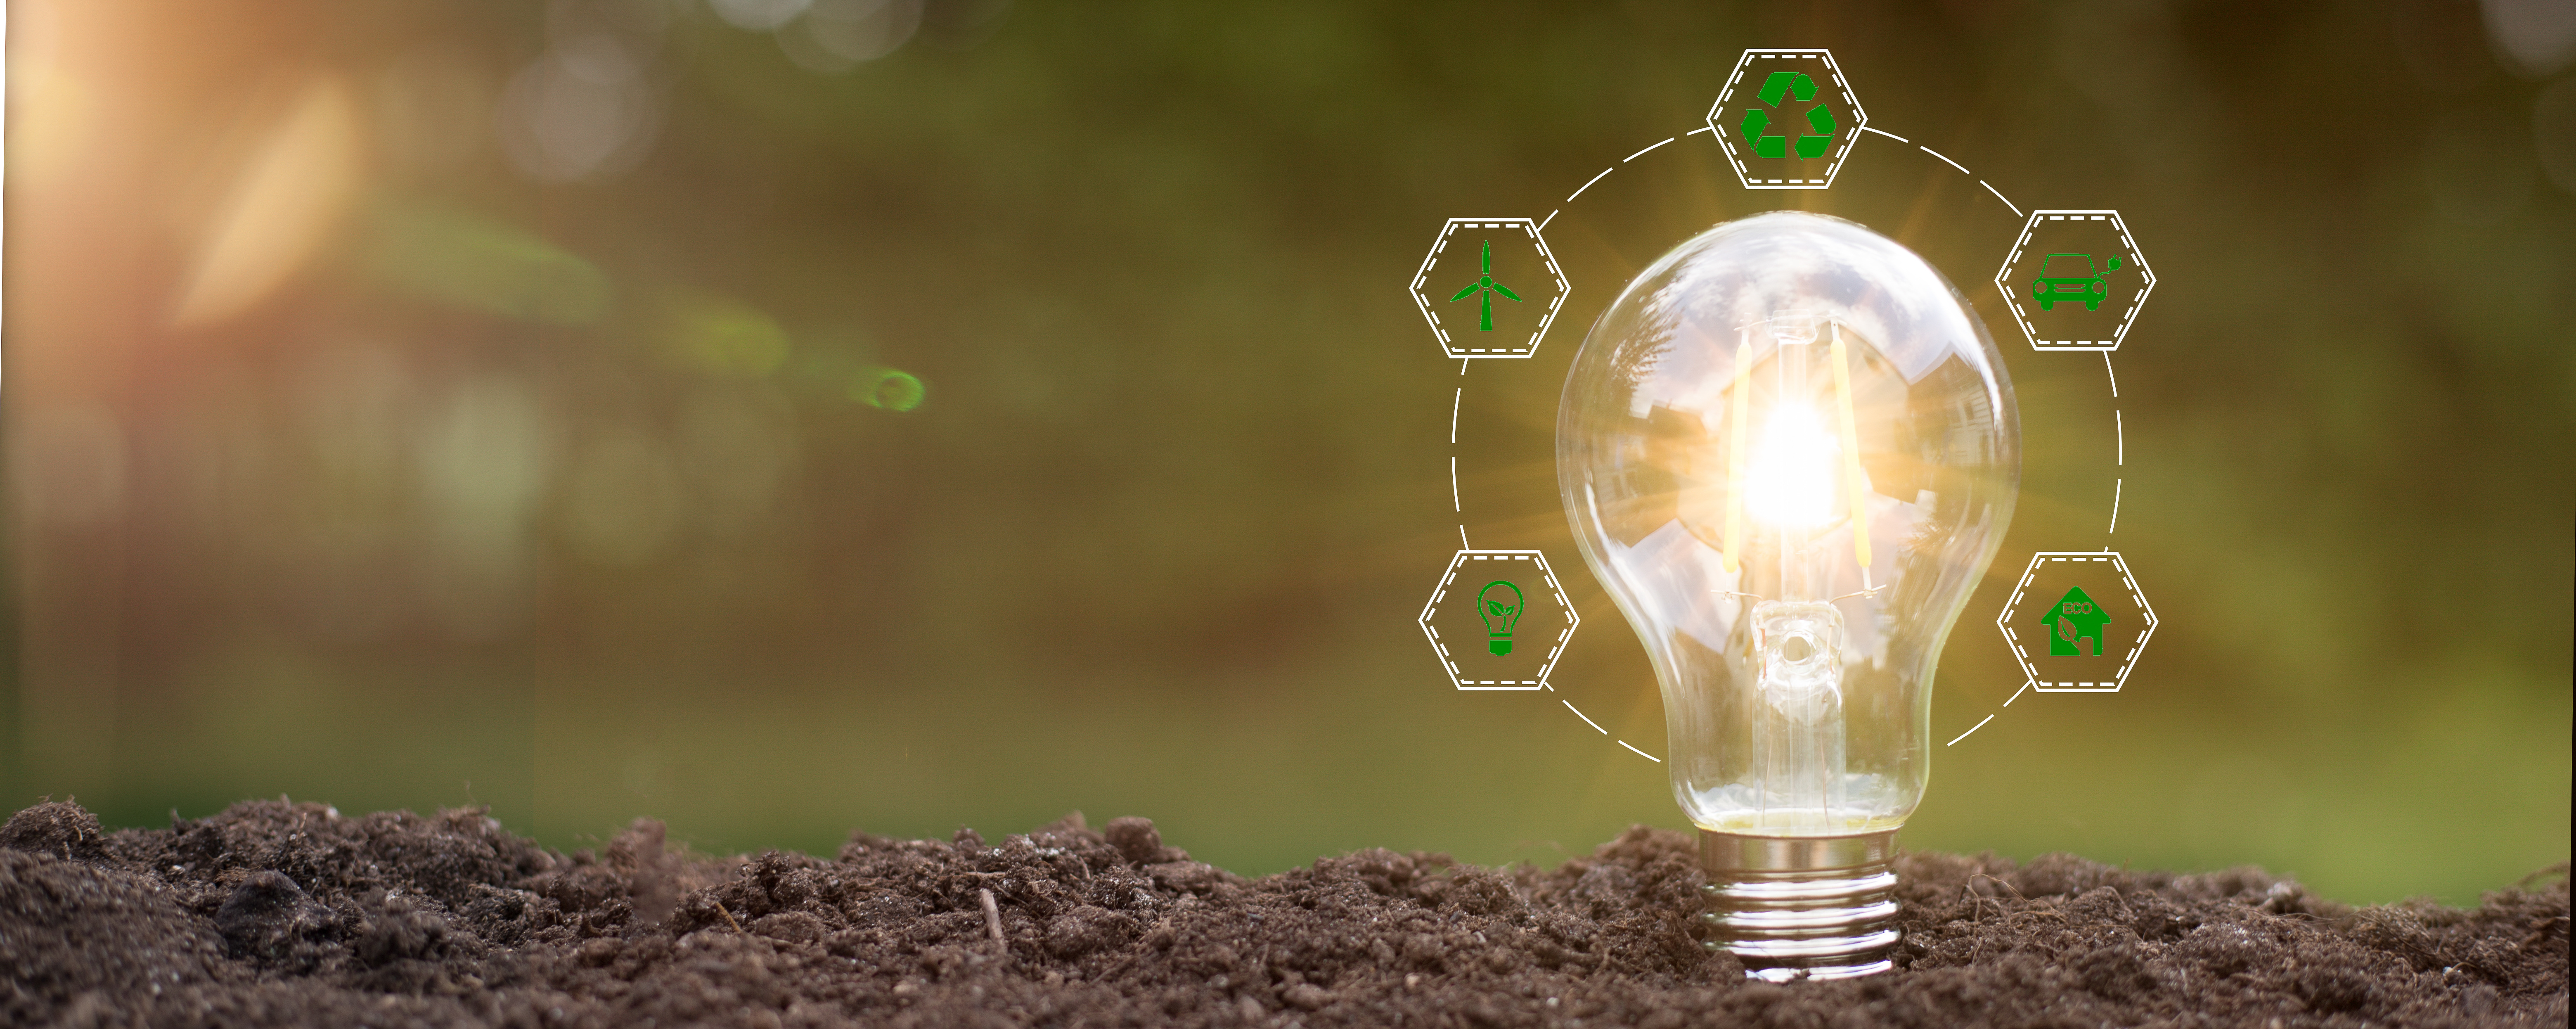 Green energy innovation light bulb